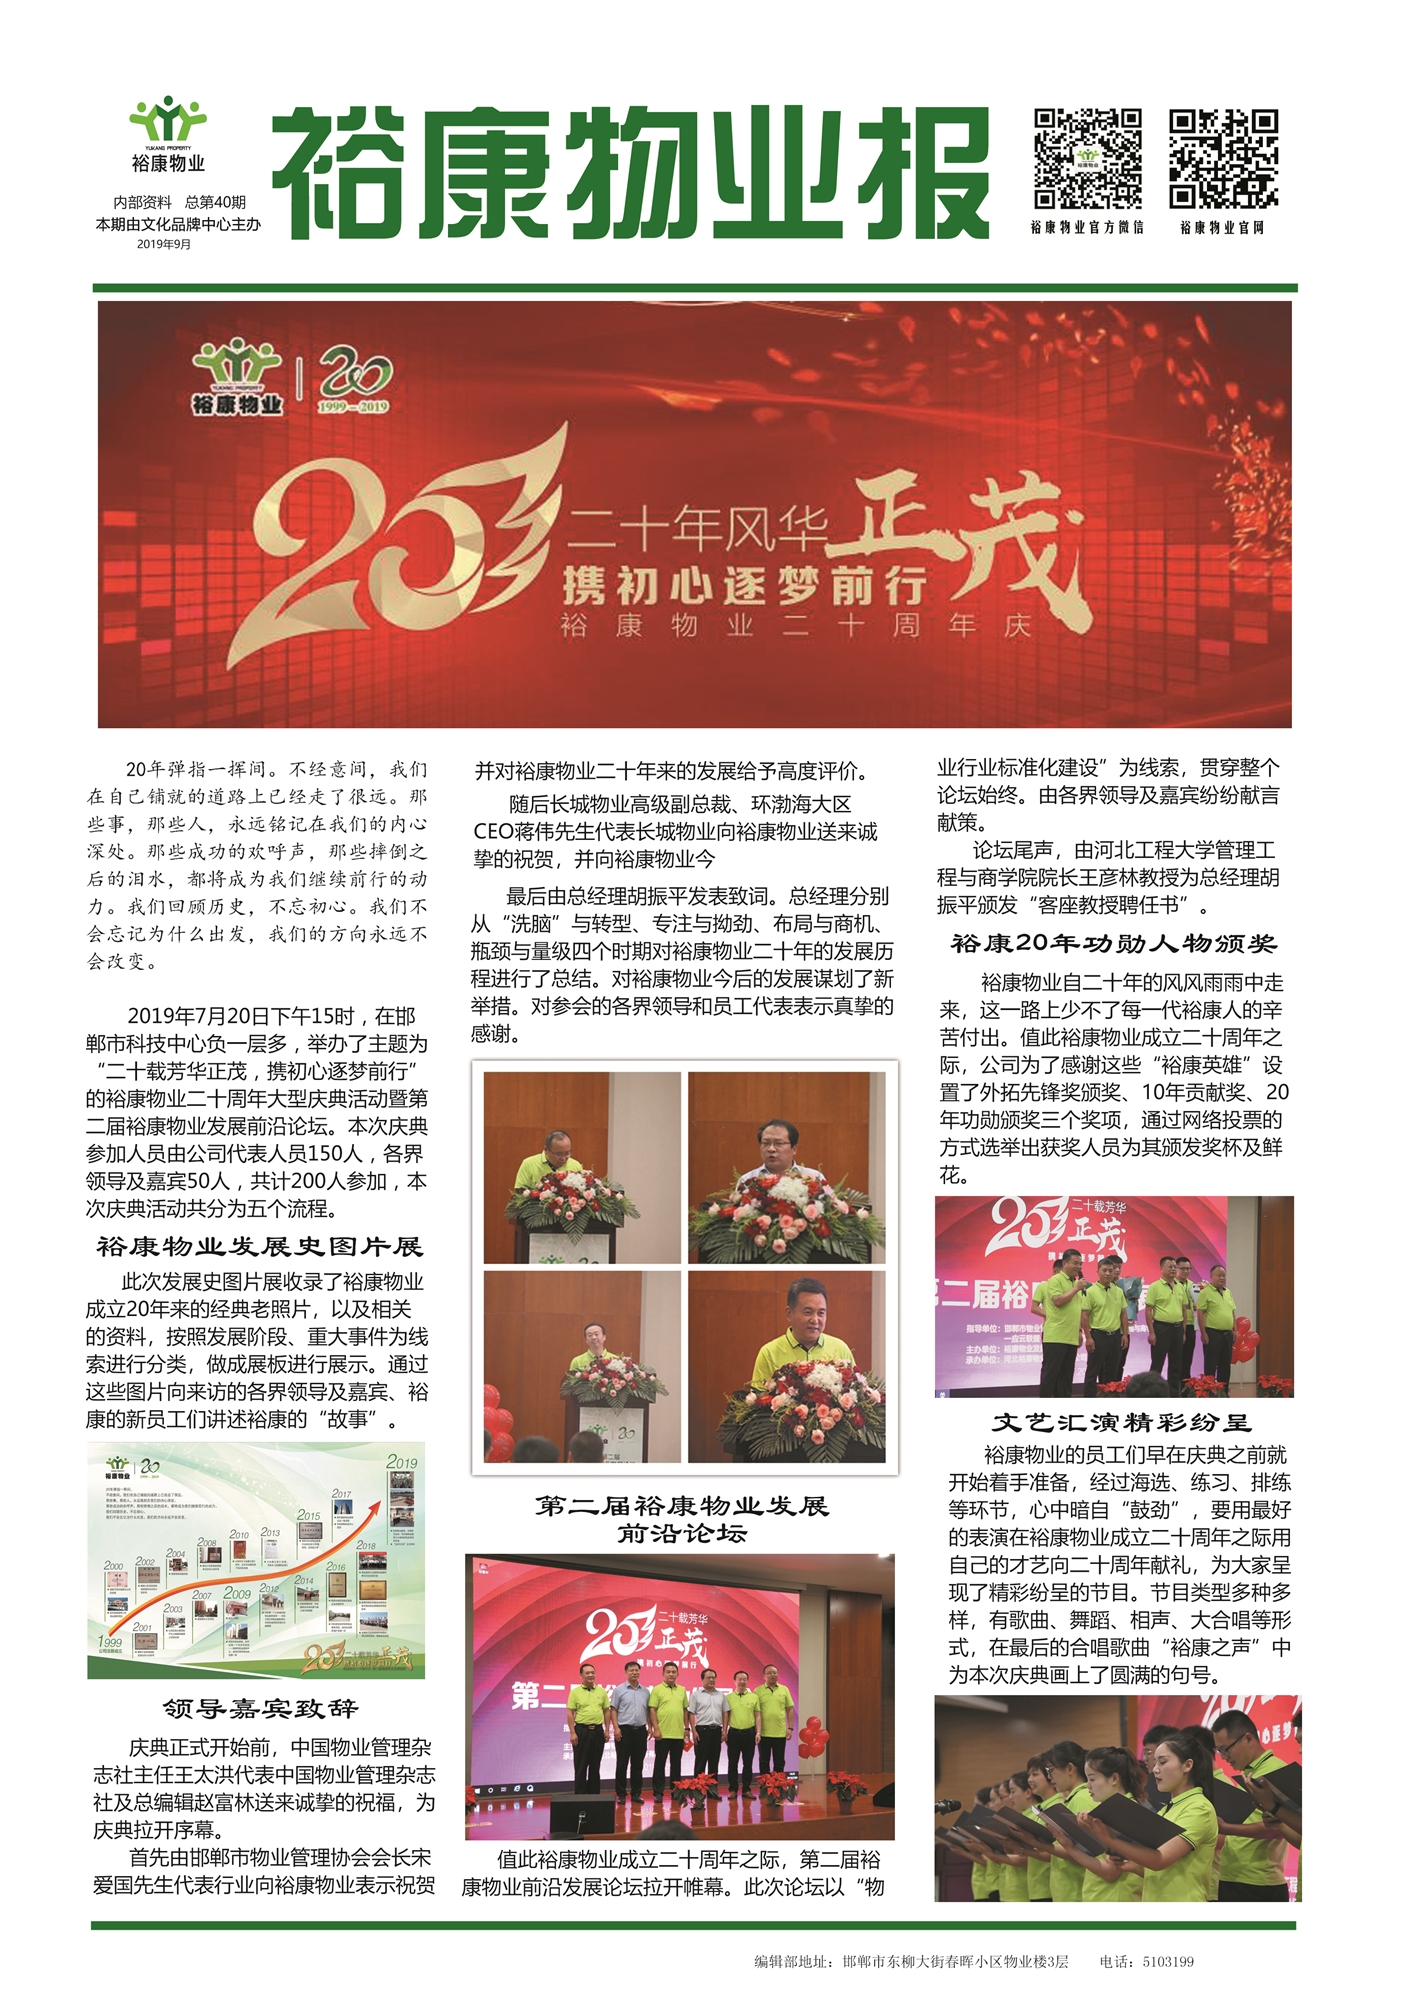 2019年9月刊“裕康物业二十周年庆典”